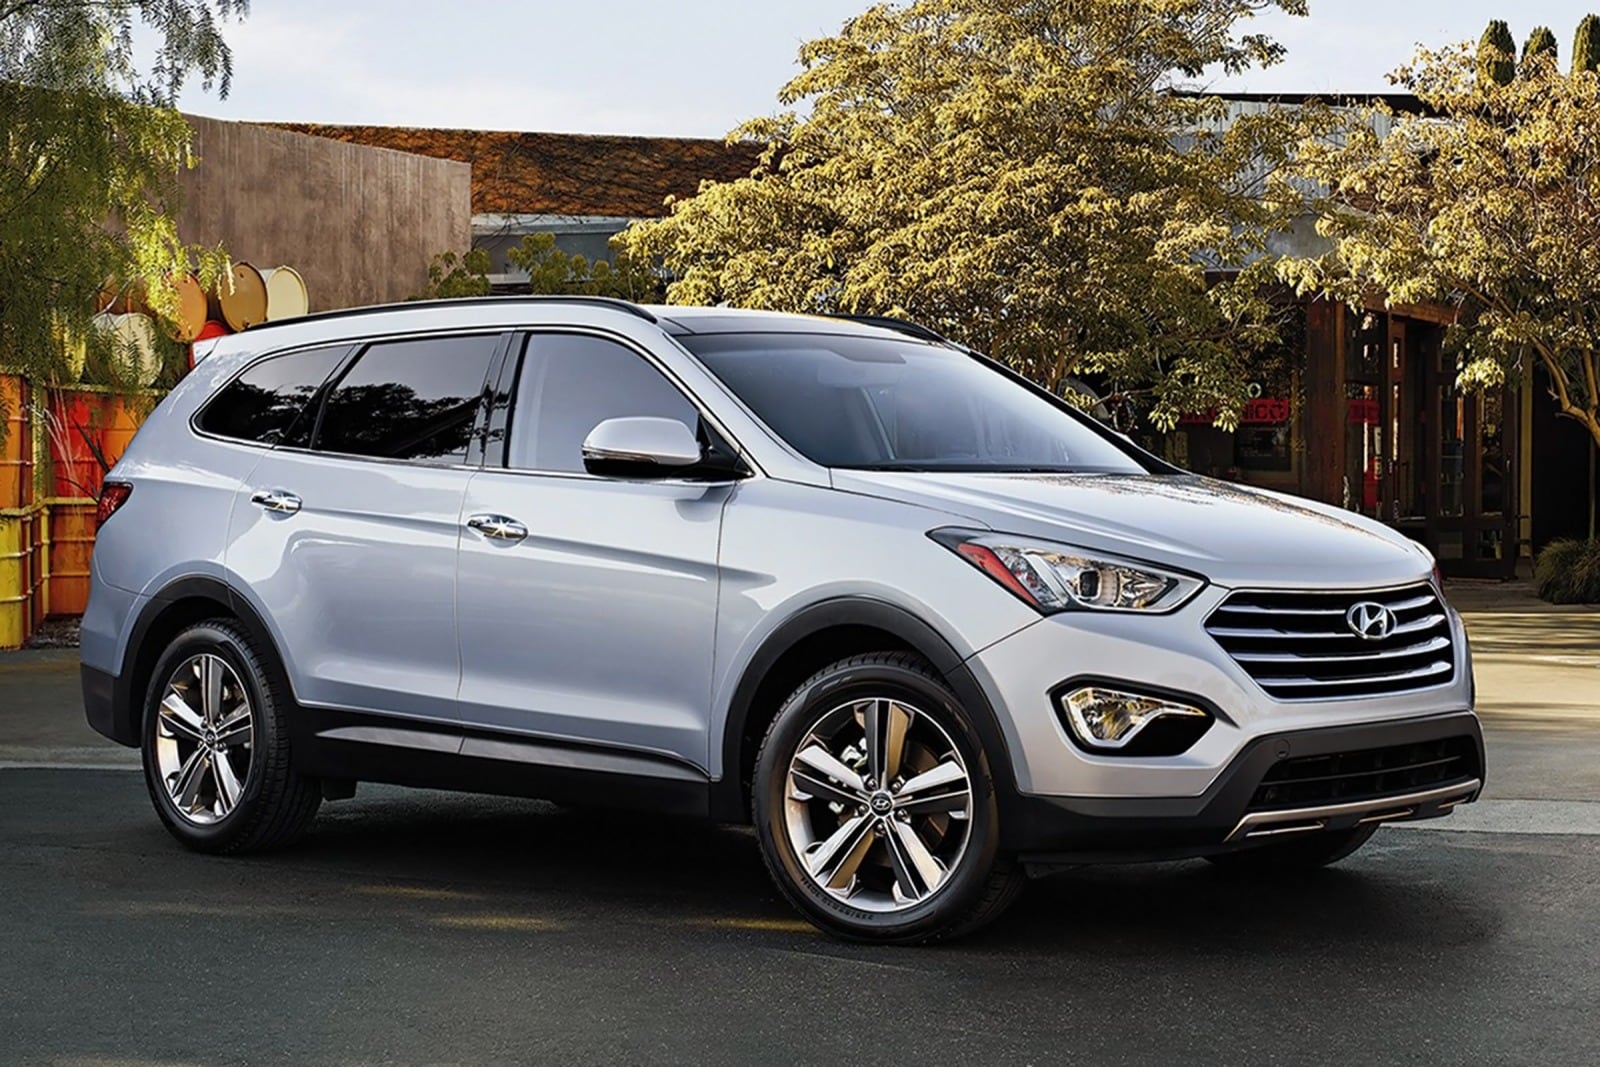 2015 Hyundai Santa Fe Review & Ratings | Edmunds